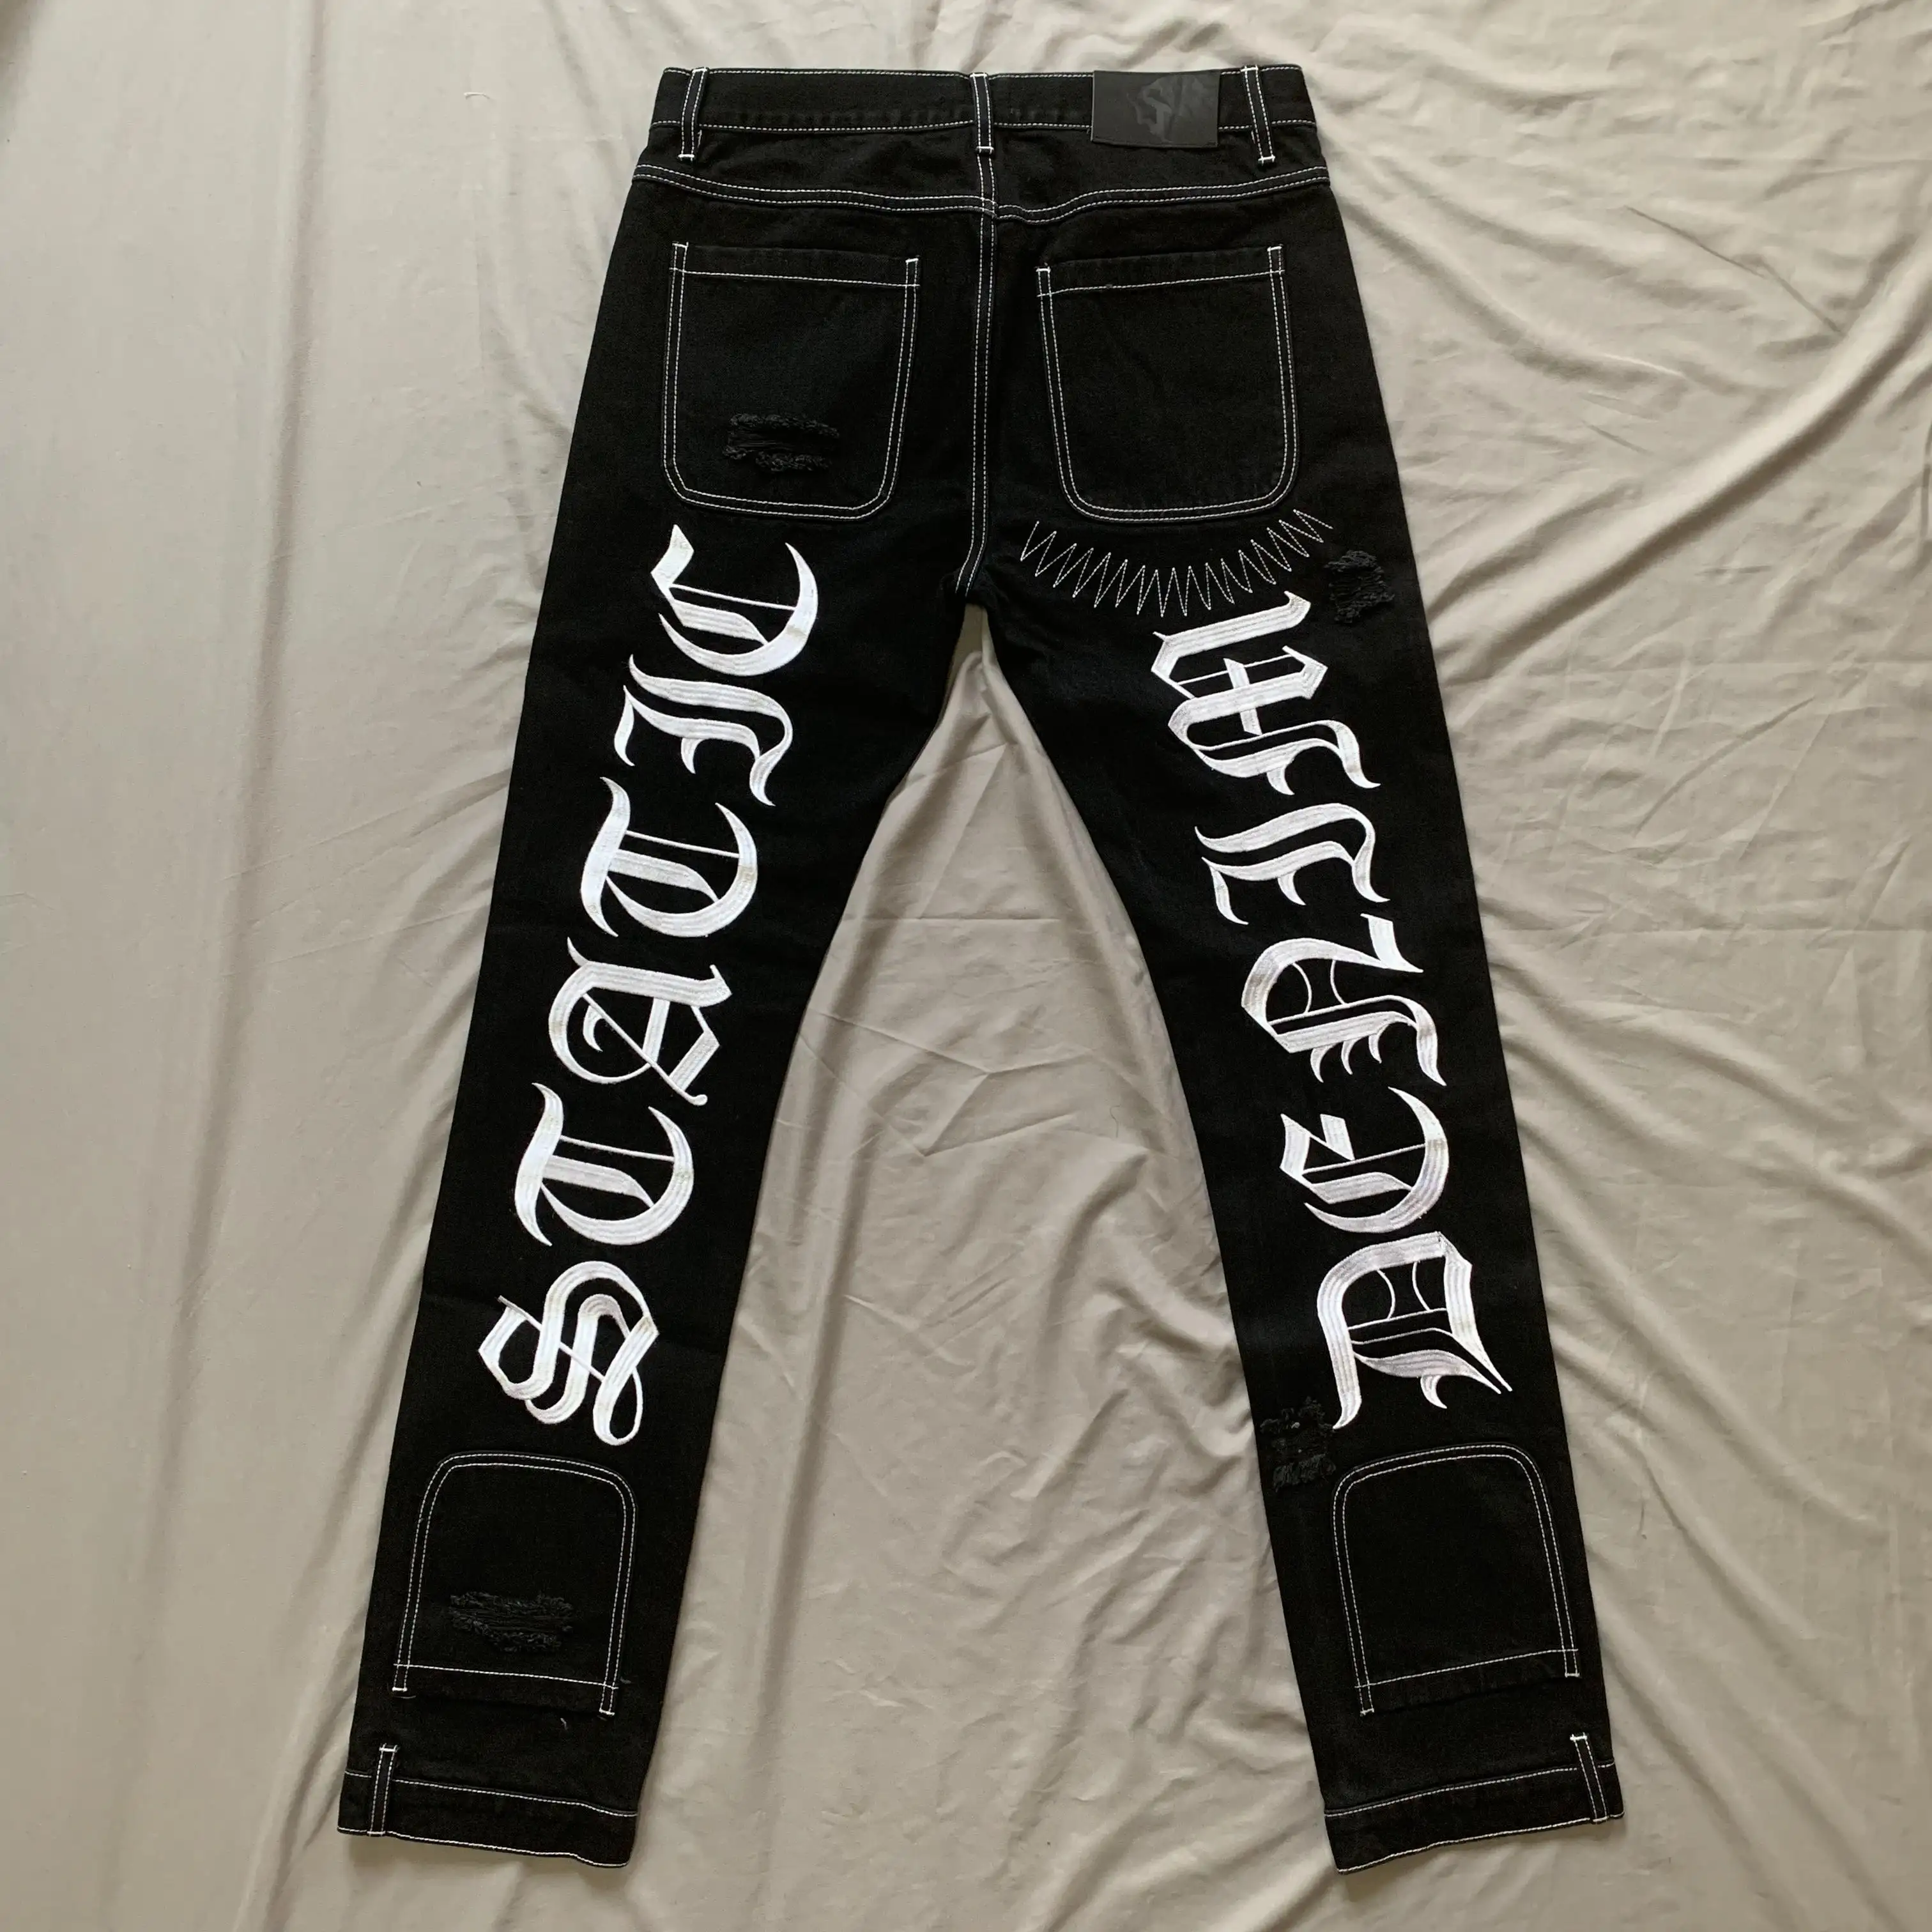 Джинсы DENIMGUYS с вышивкой вверх дном, черный дизайн, собственный логотип на заказ, поставщик джинсов, Заводские производители, мужские джинсы